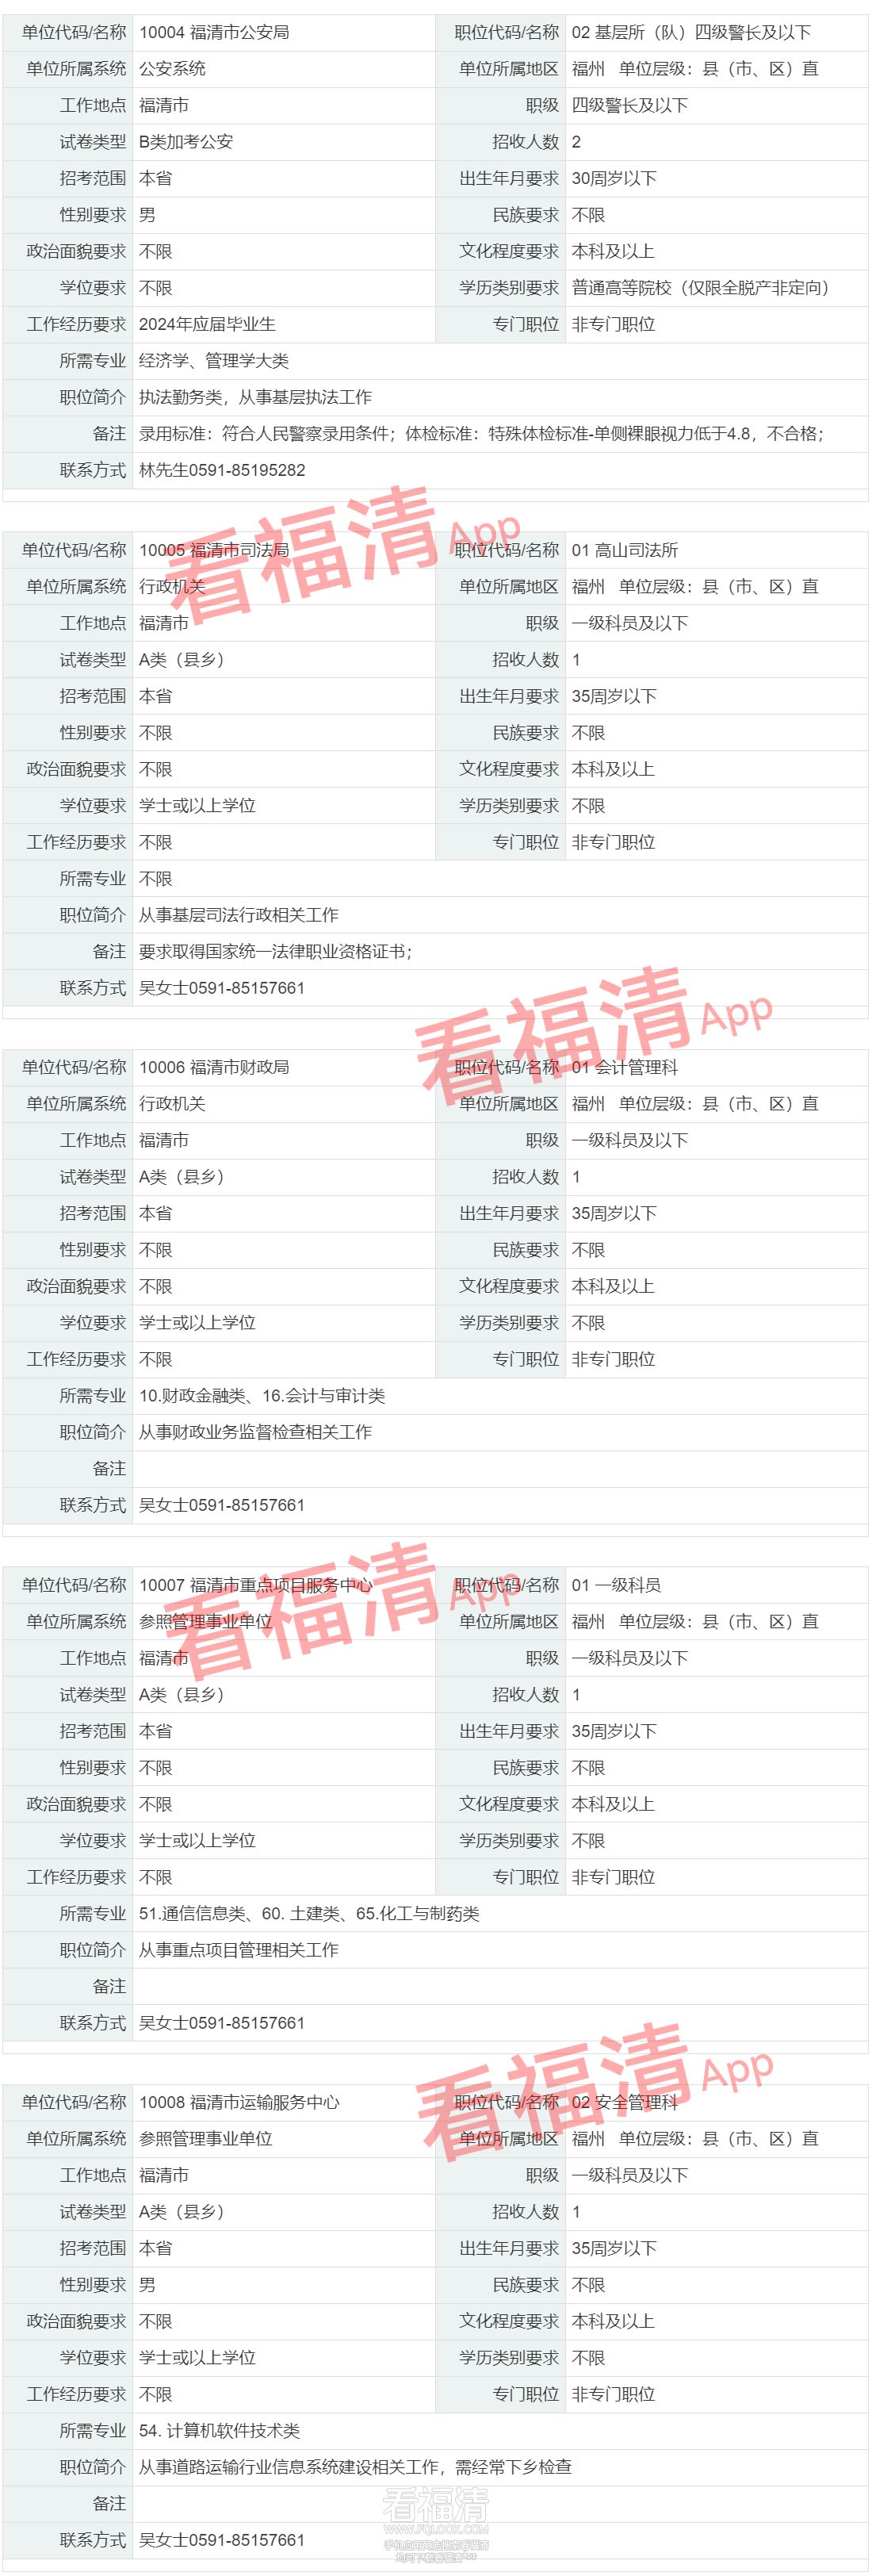 职位查询 福建省公务员考试录用网2_r2_c1.jpg